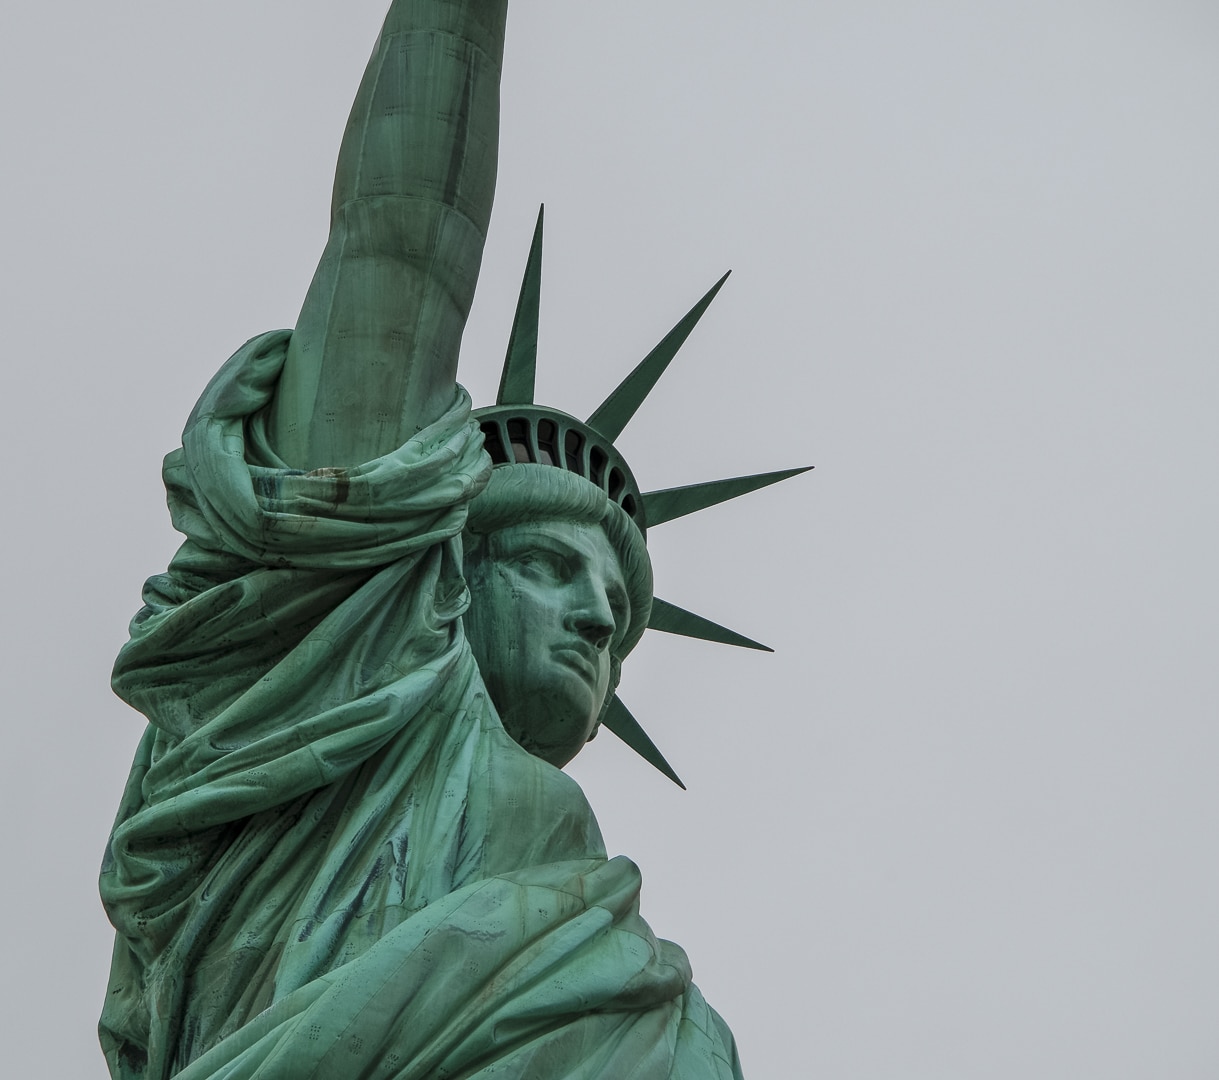 visiter la couronne de la statue de la liberté NYC